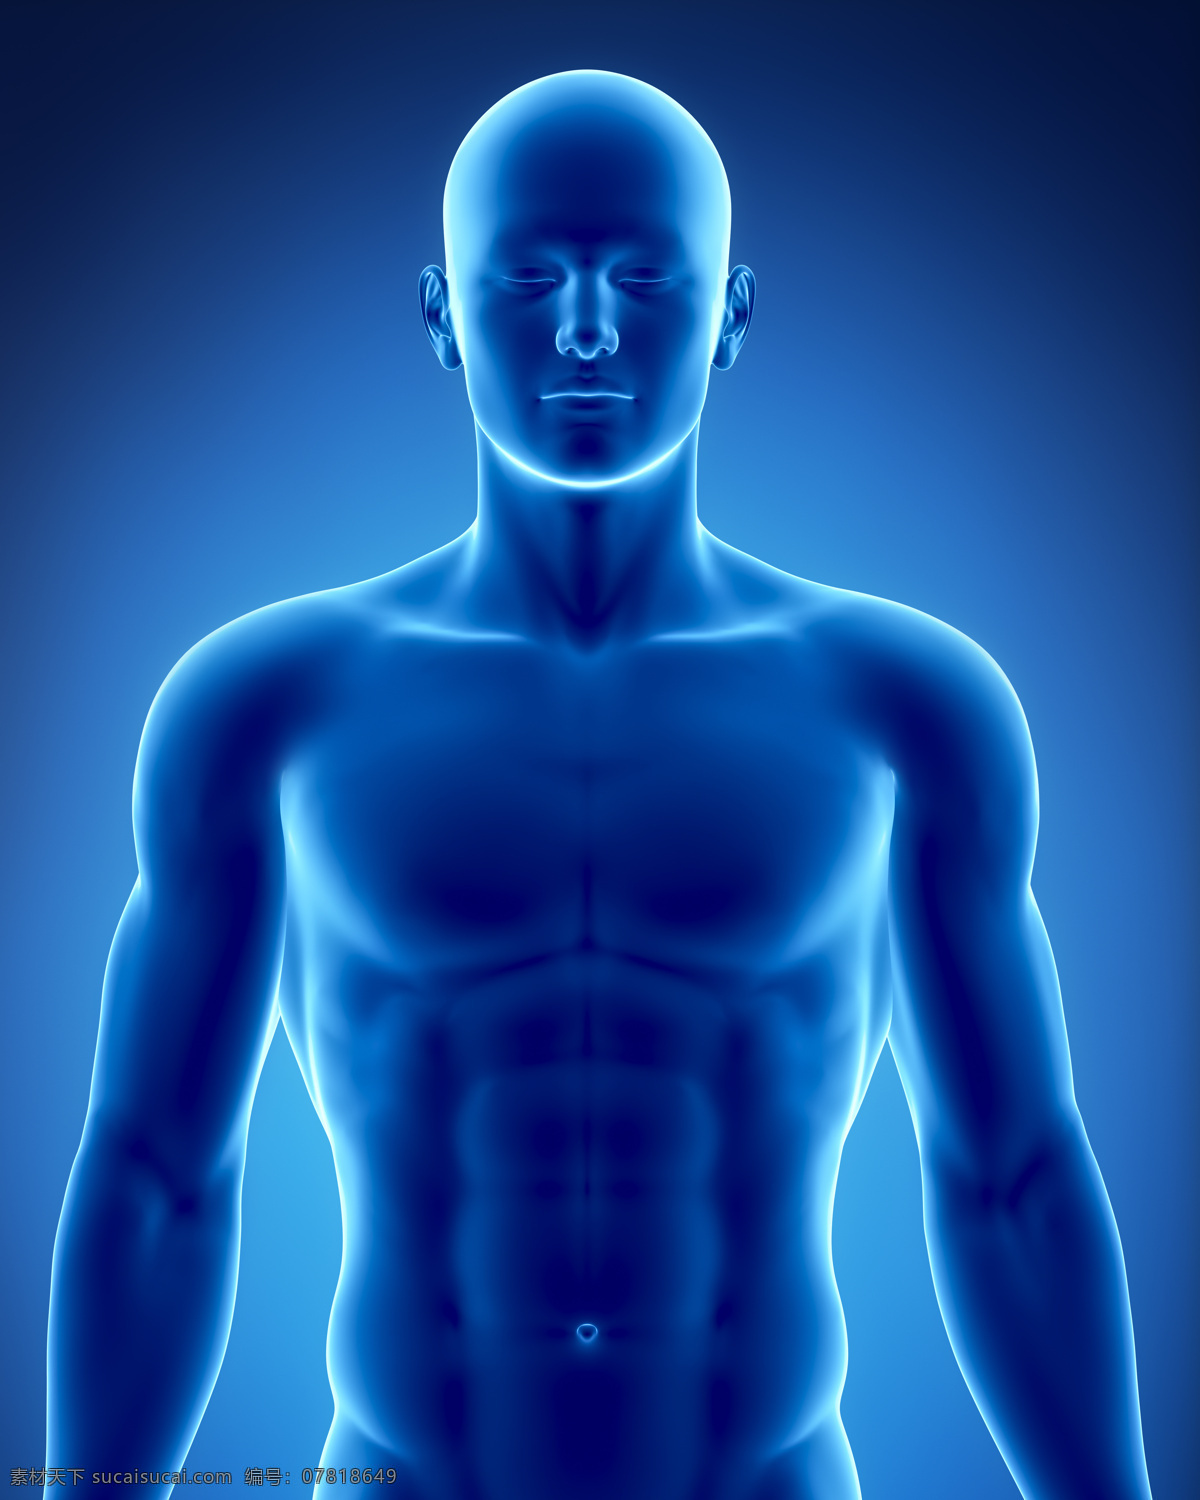 男性 人体 结构 男性器官 男性人体结构 人体器官 医疗科学 医学 人体器官图 人物图片